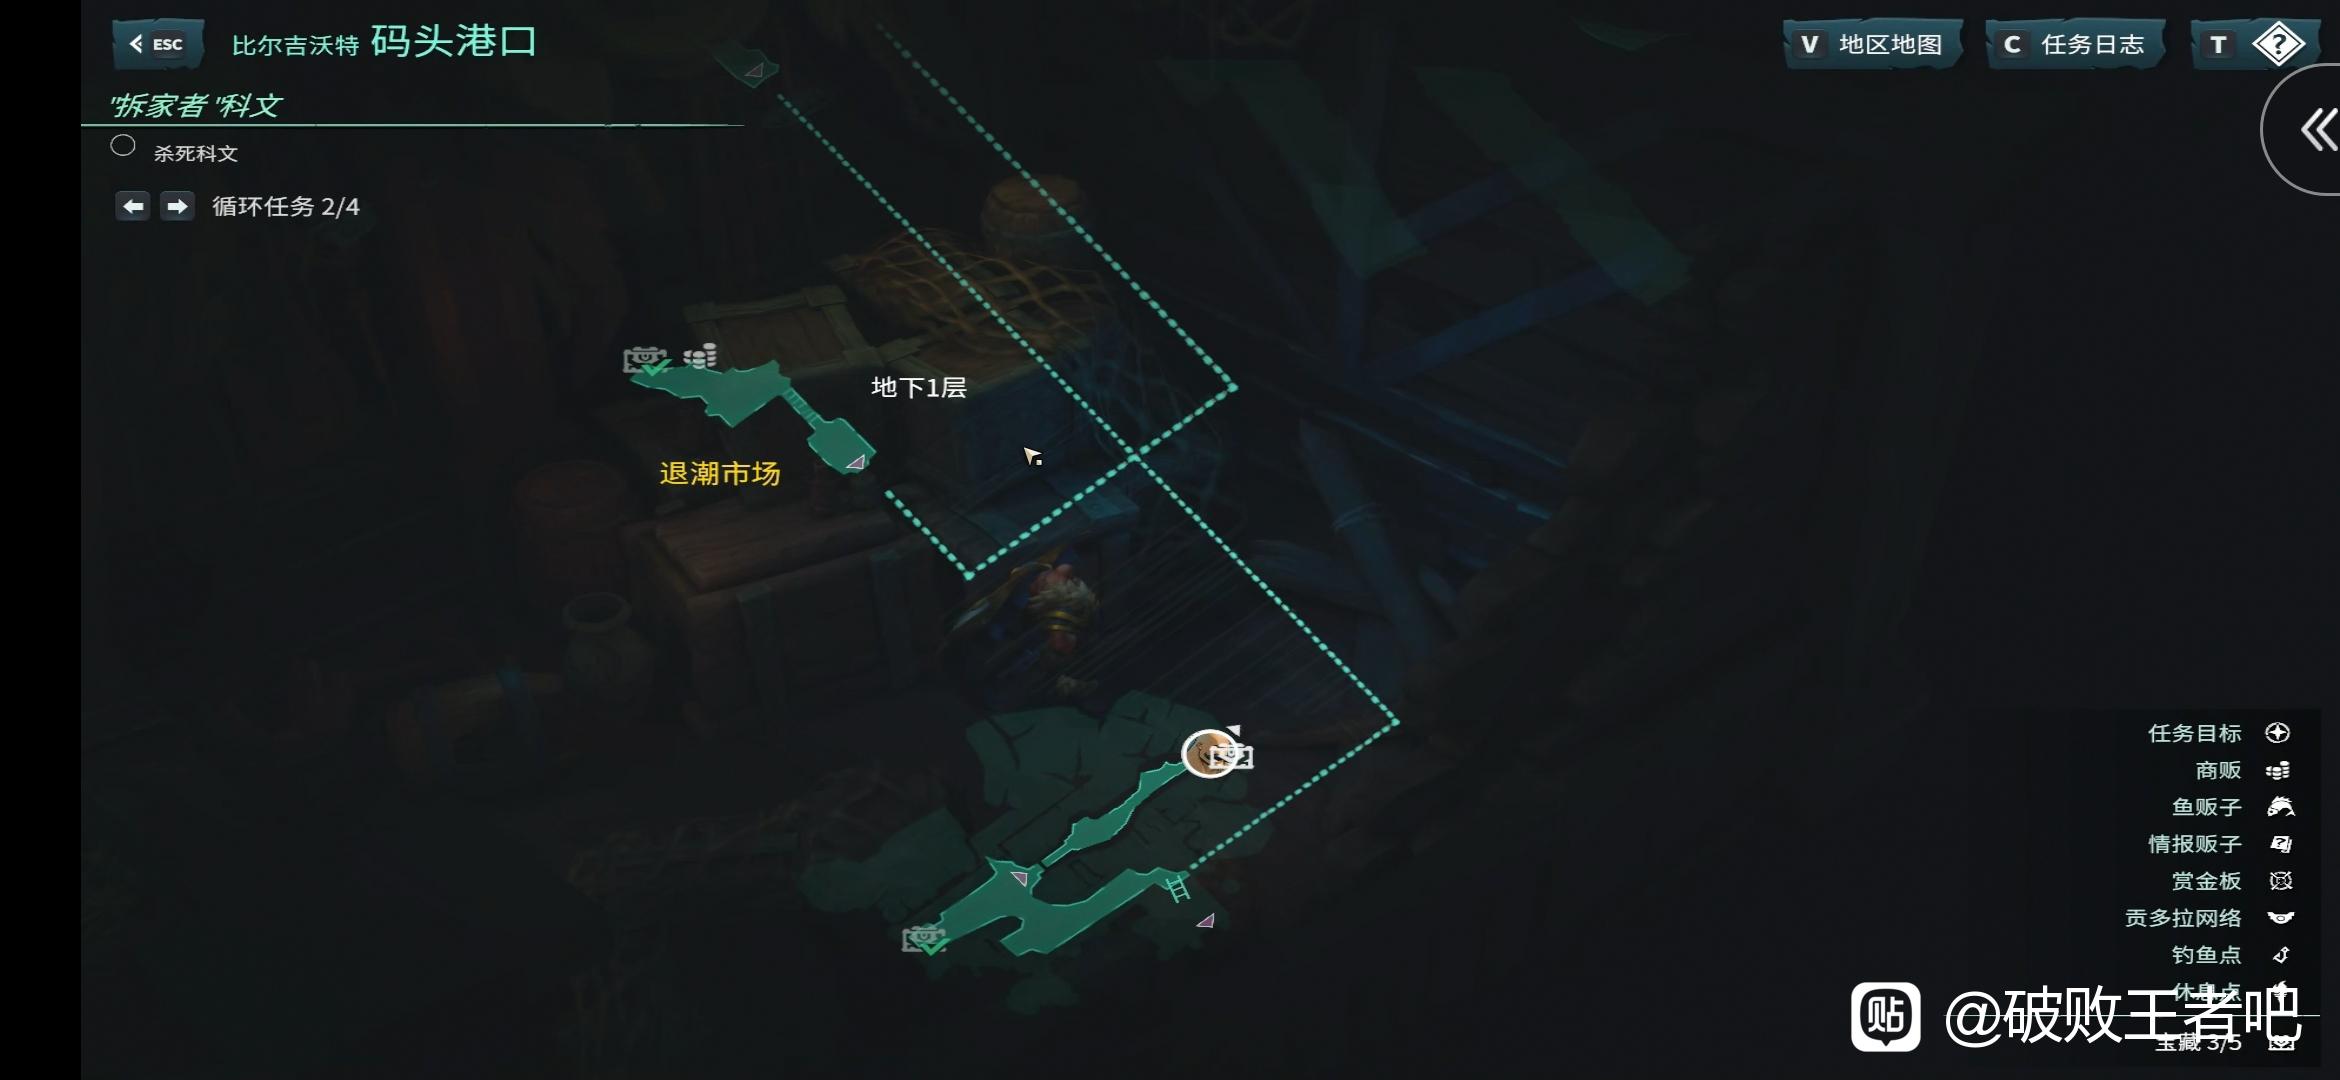 破败王者英雄联盟传奇码头港口地图的宝箱在哪里_码头港口地图宝箱位置介绍